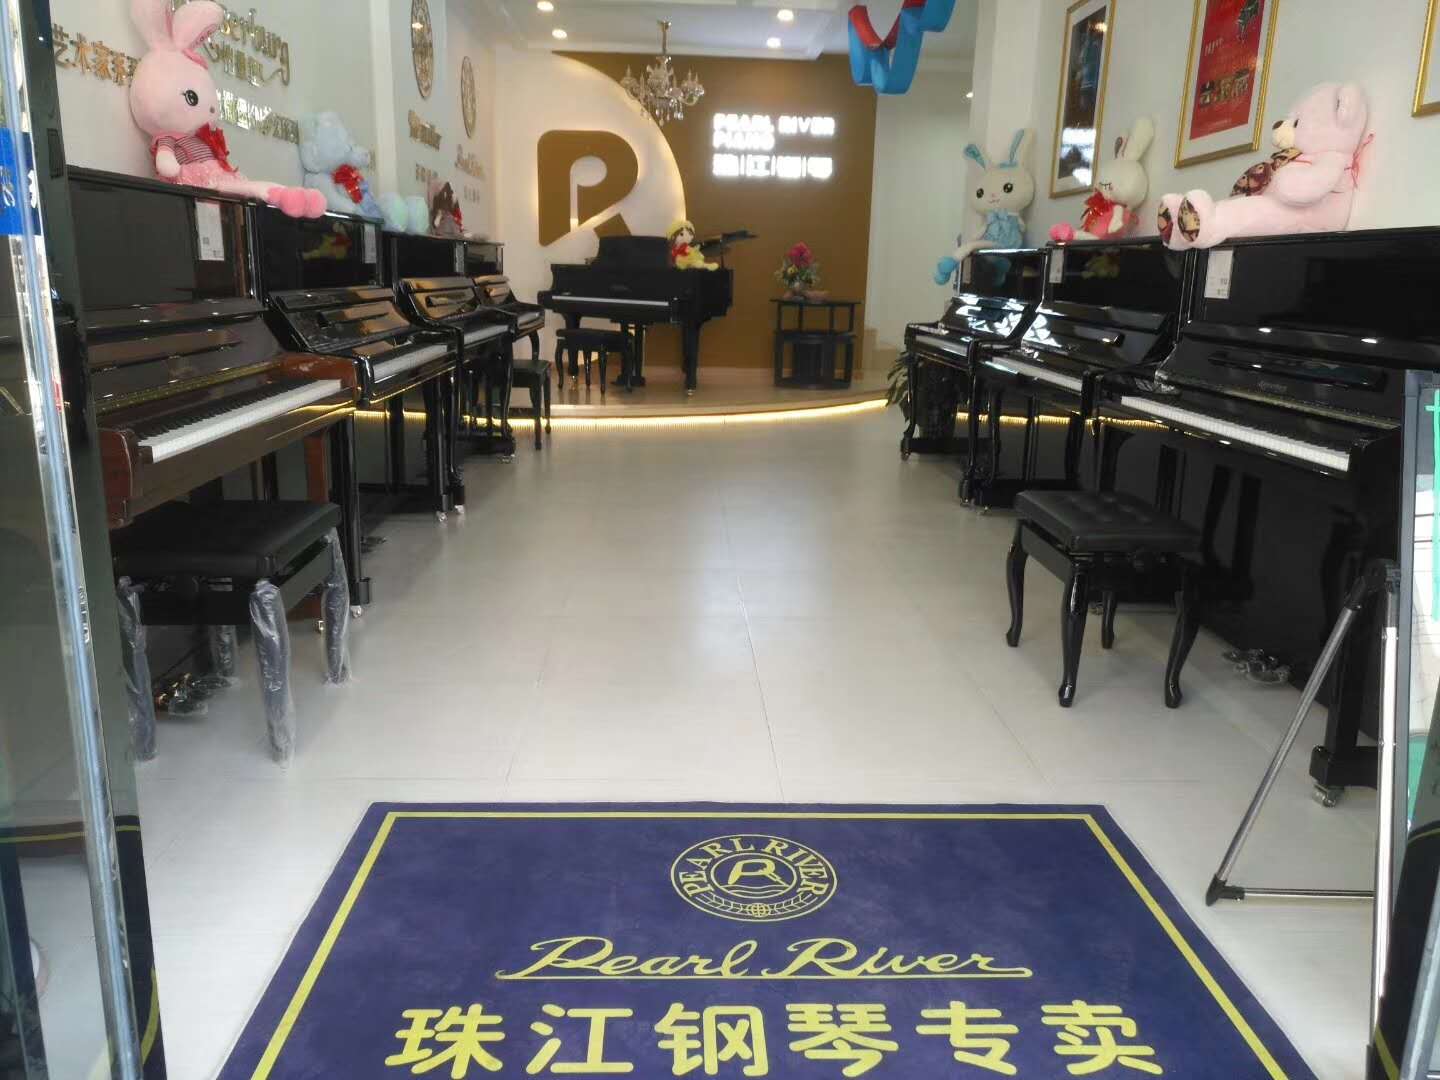 珠江钢琴专卖店寻合作伙伴_5